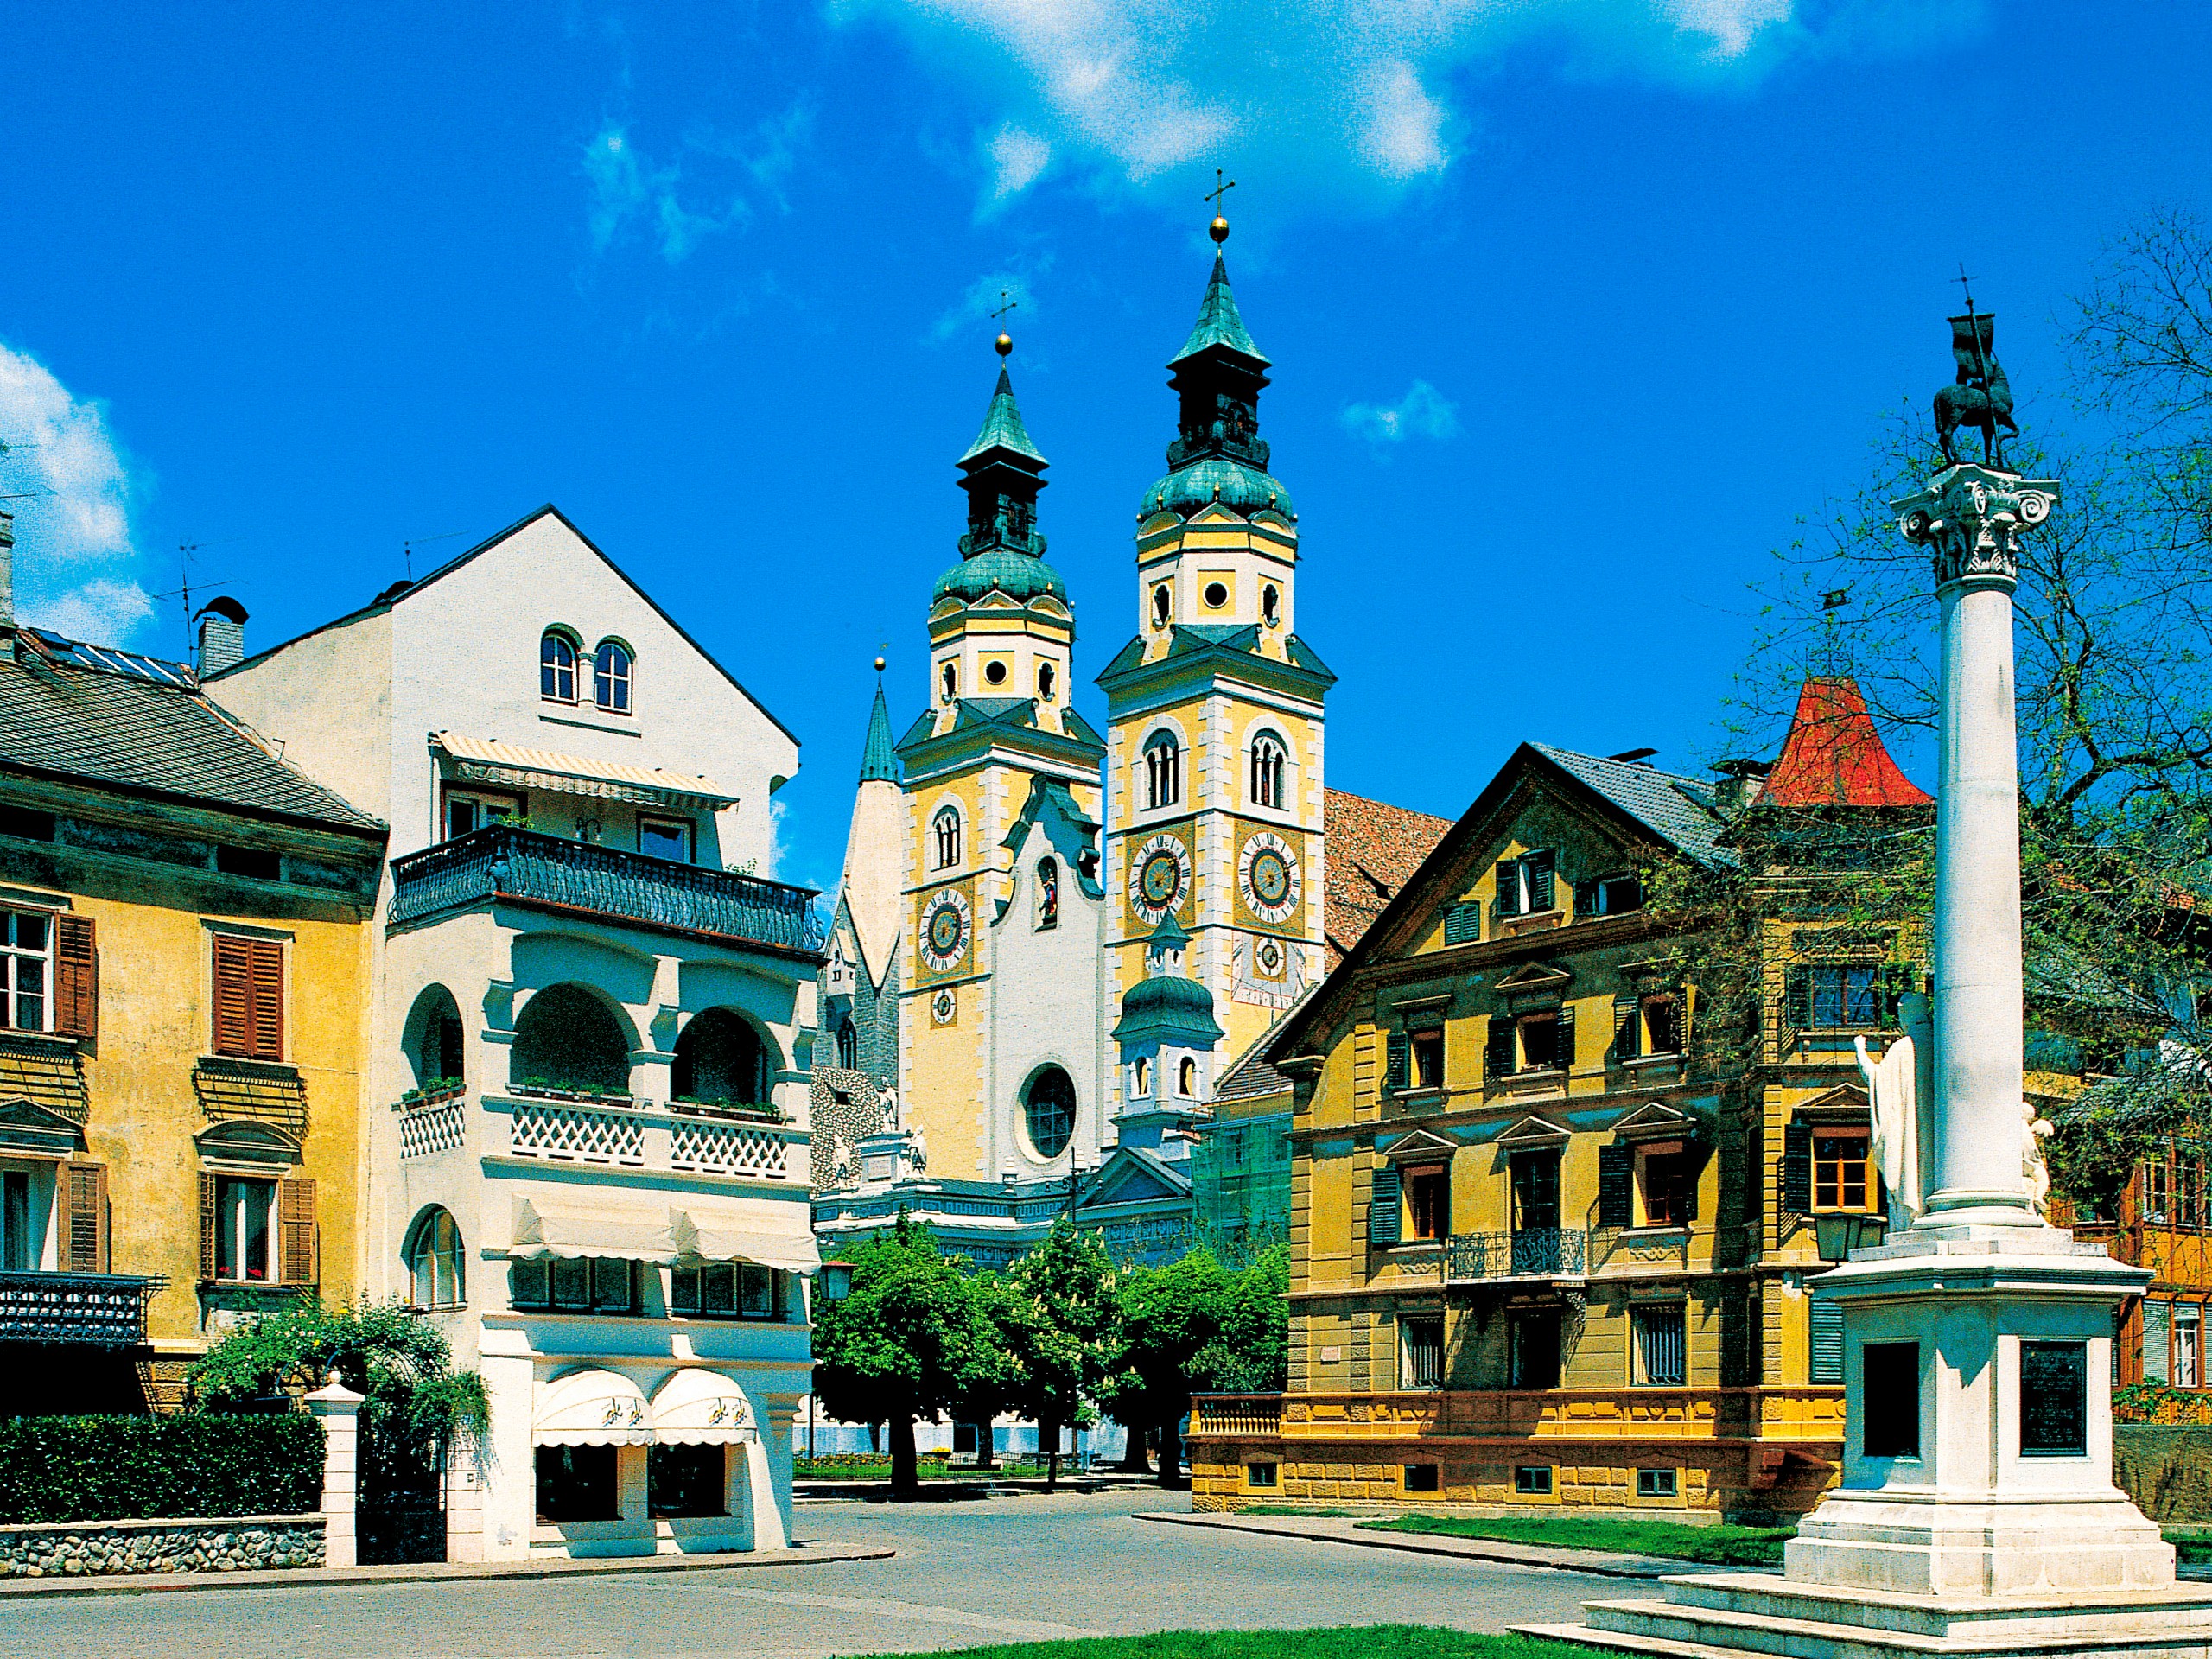 Beautiful oldtown in Germany